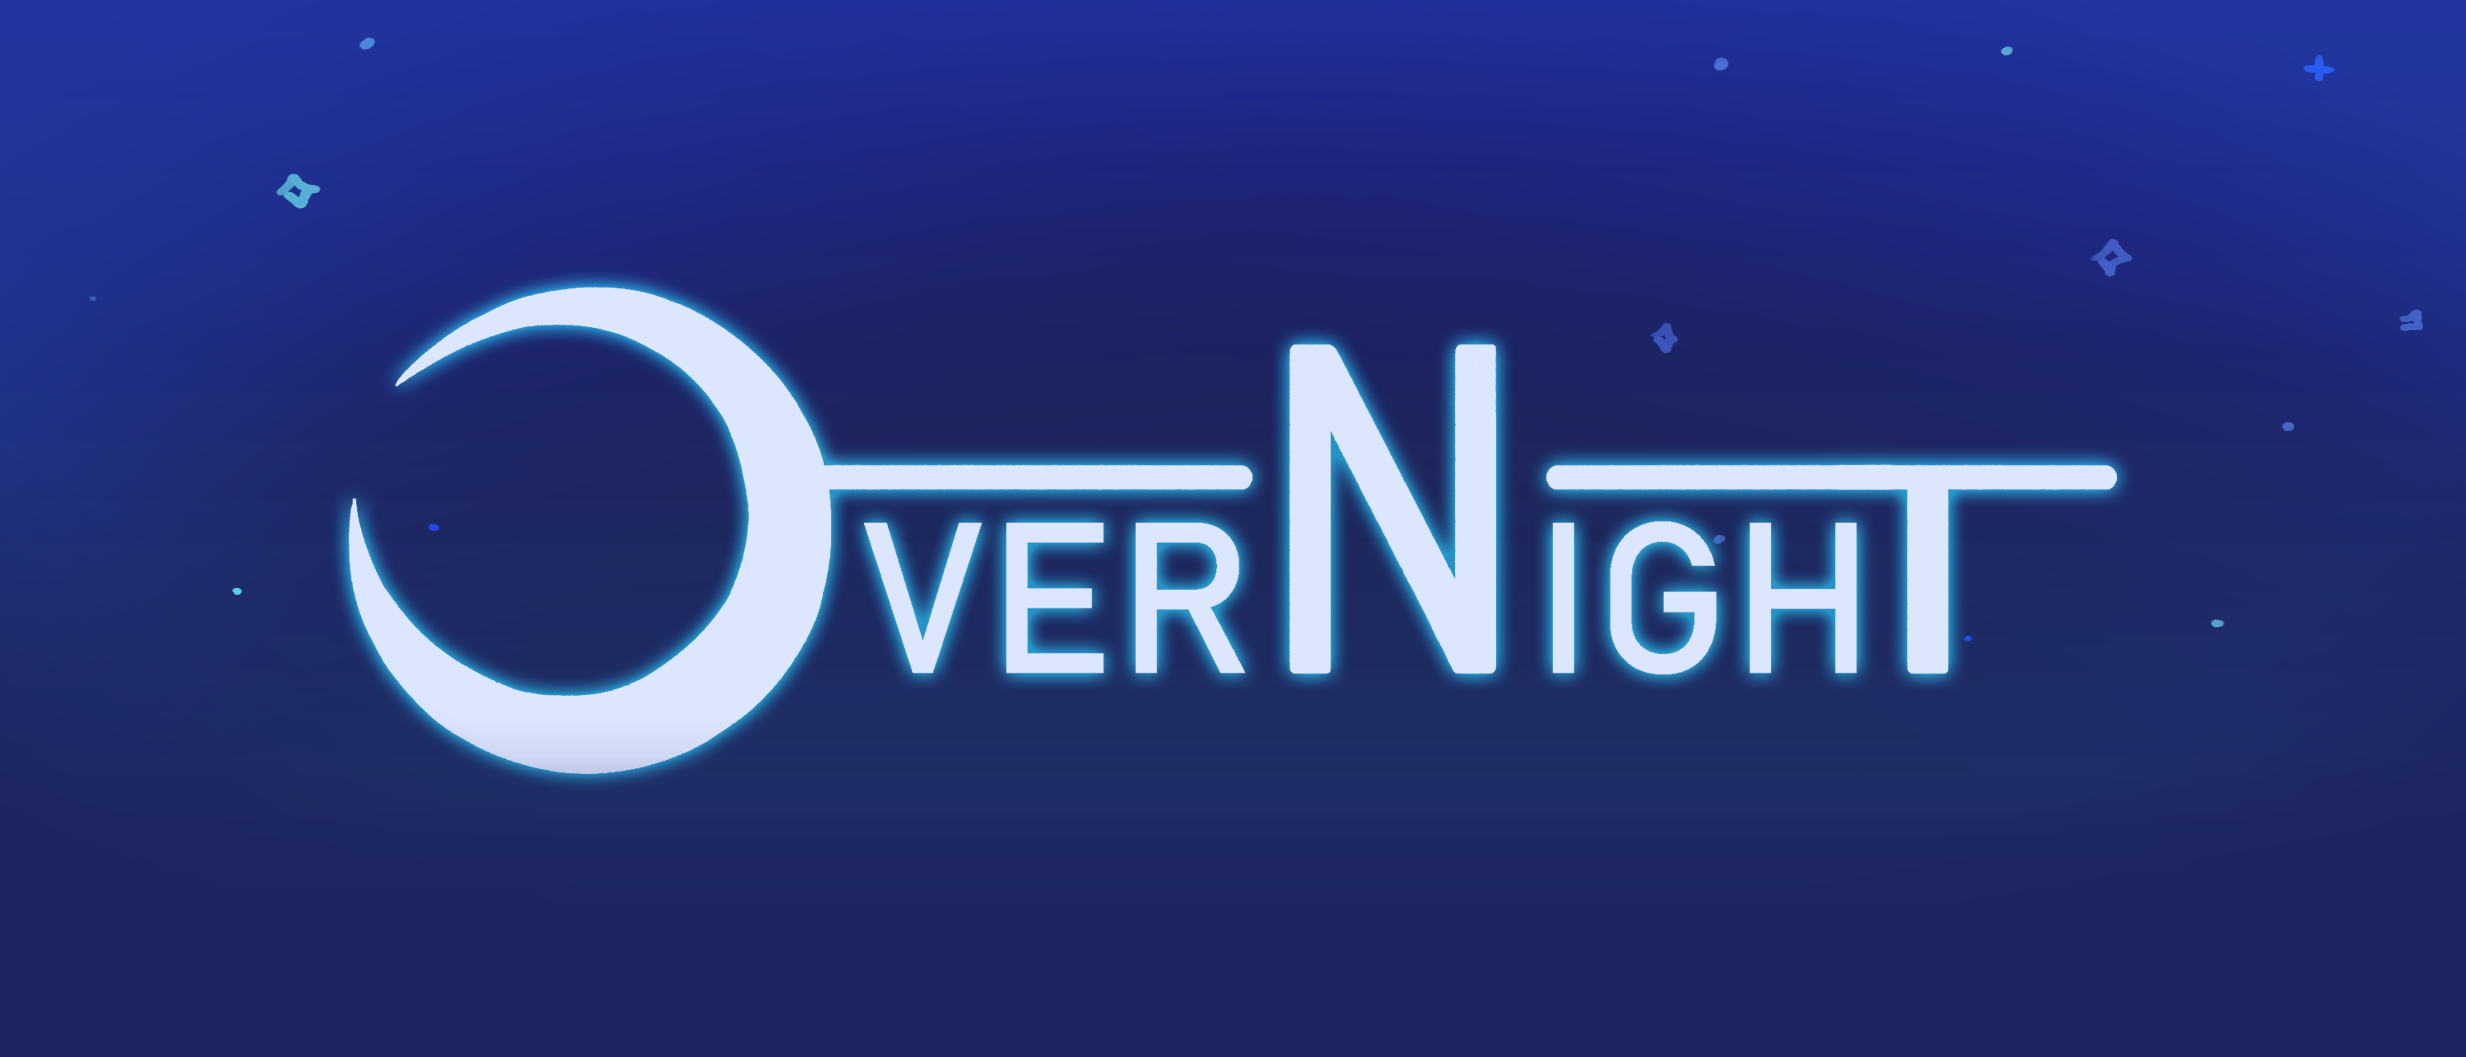 OverNight Demo